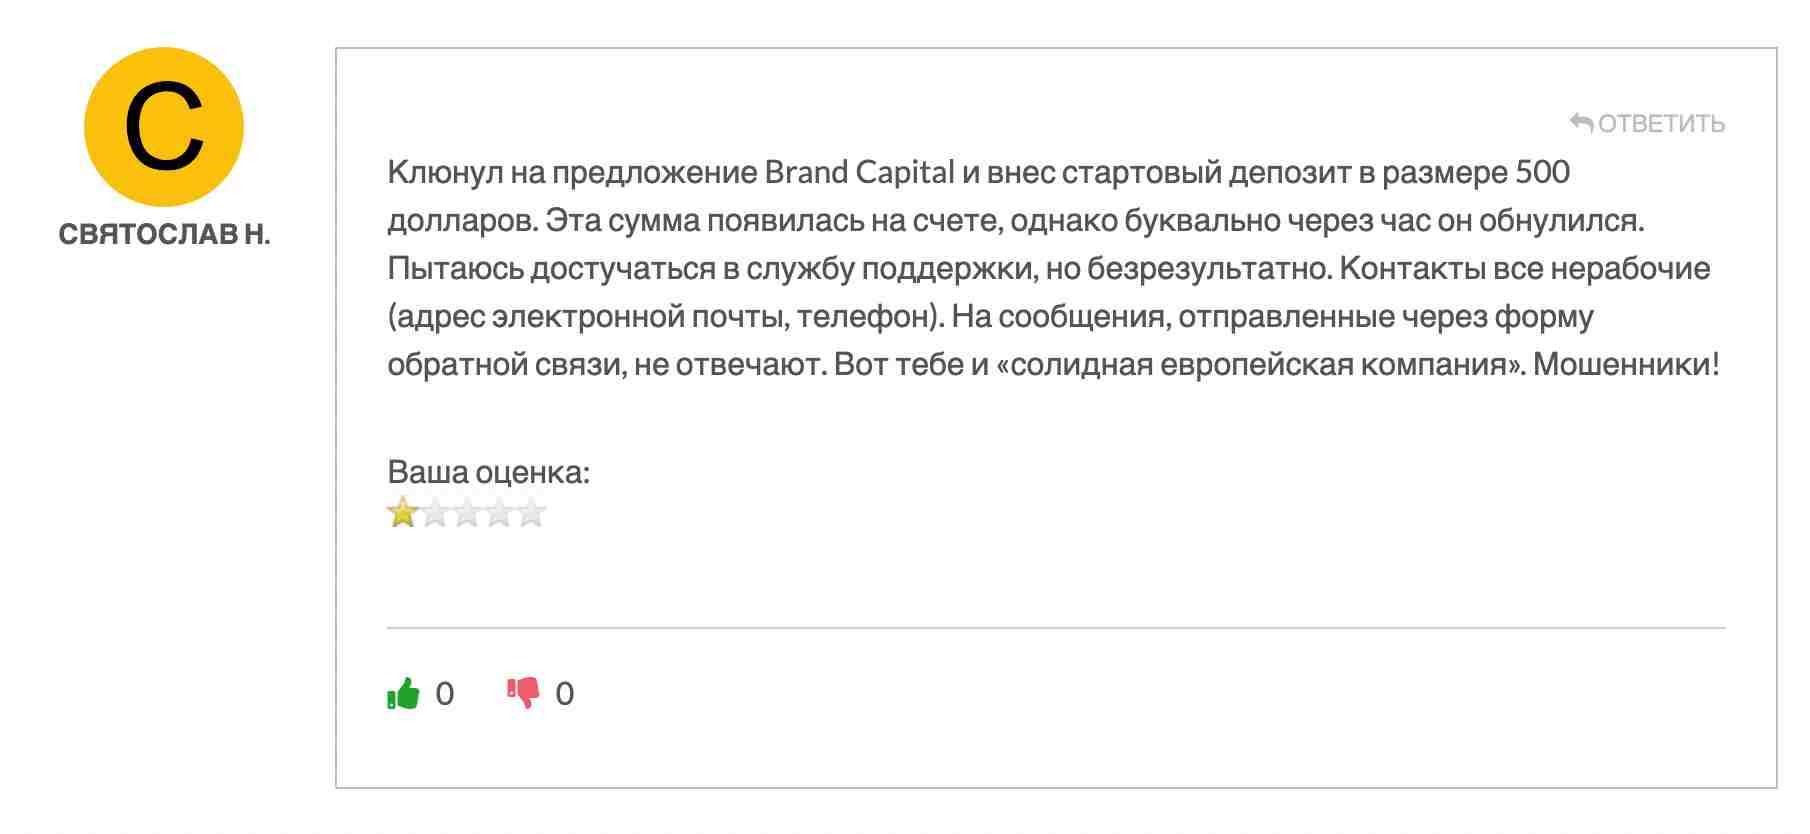 Brand Capital — лживый брокер, работающий в своих интересах